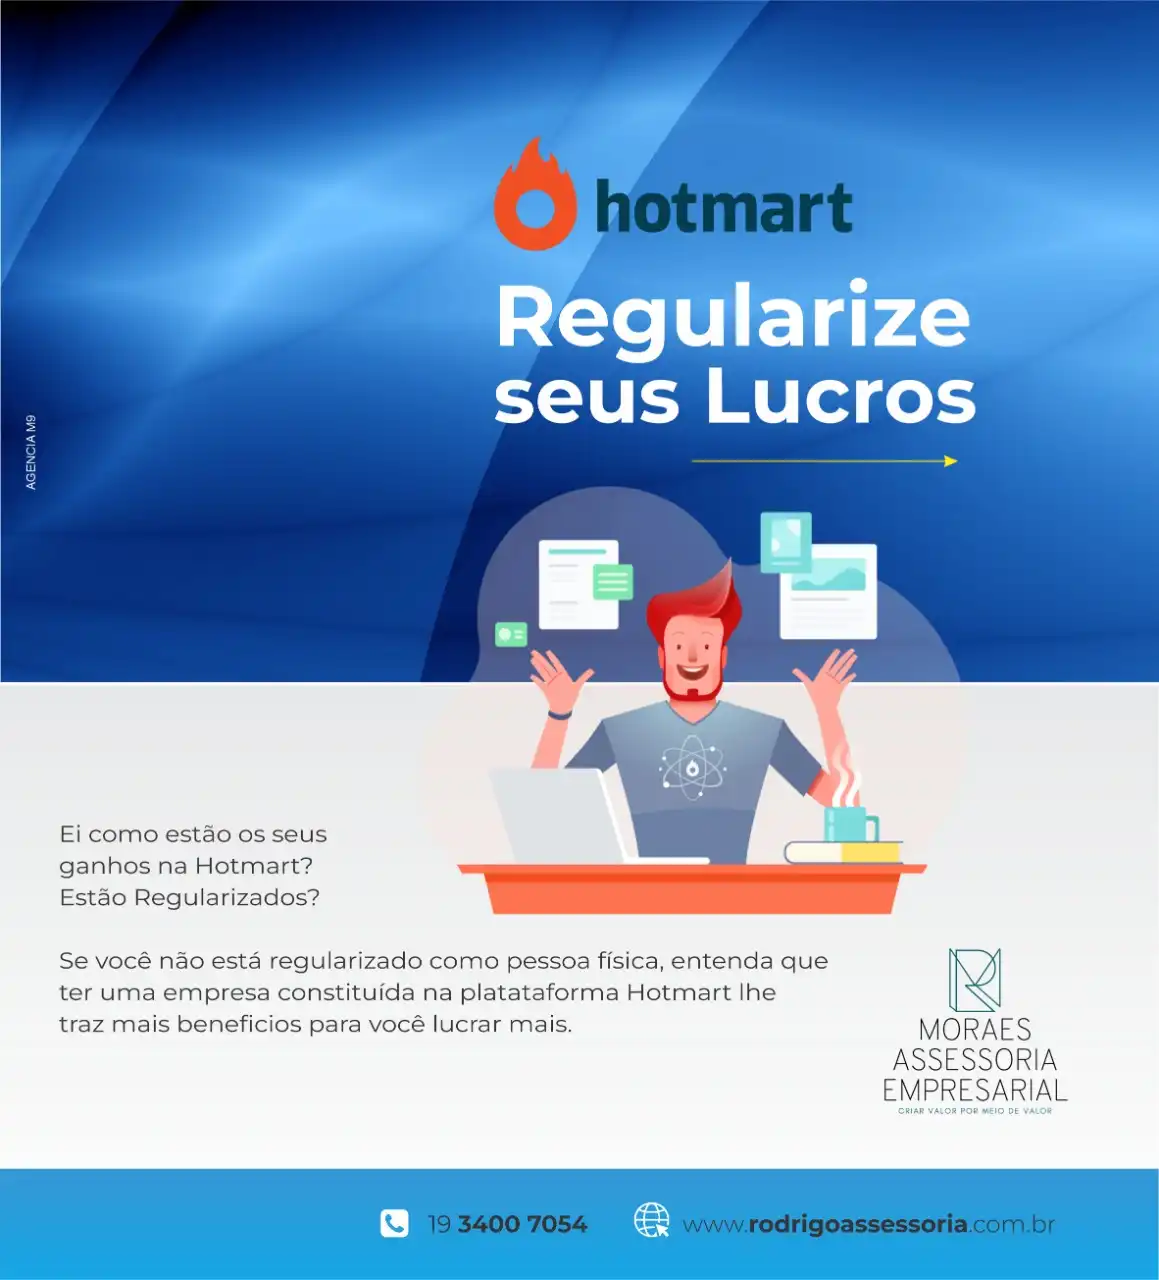 
Propaganda Post sobre Regularização de Lucros Hotmart para Escritório de Contabilidade



